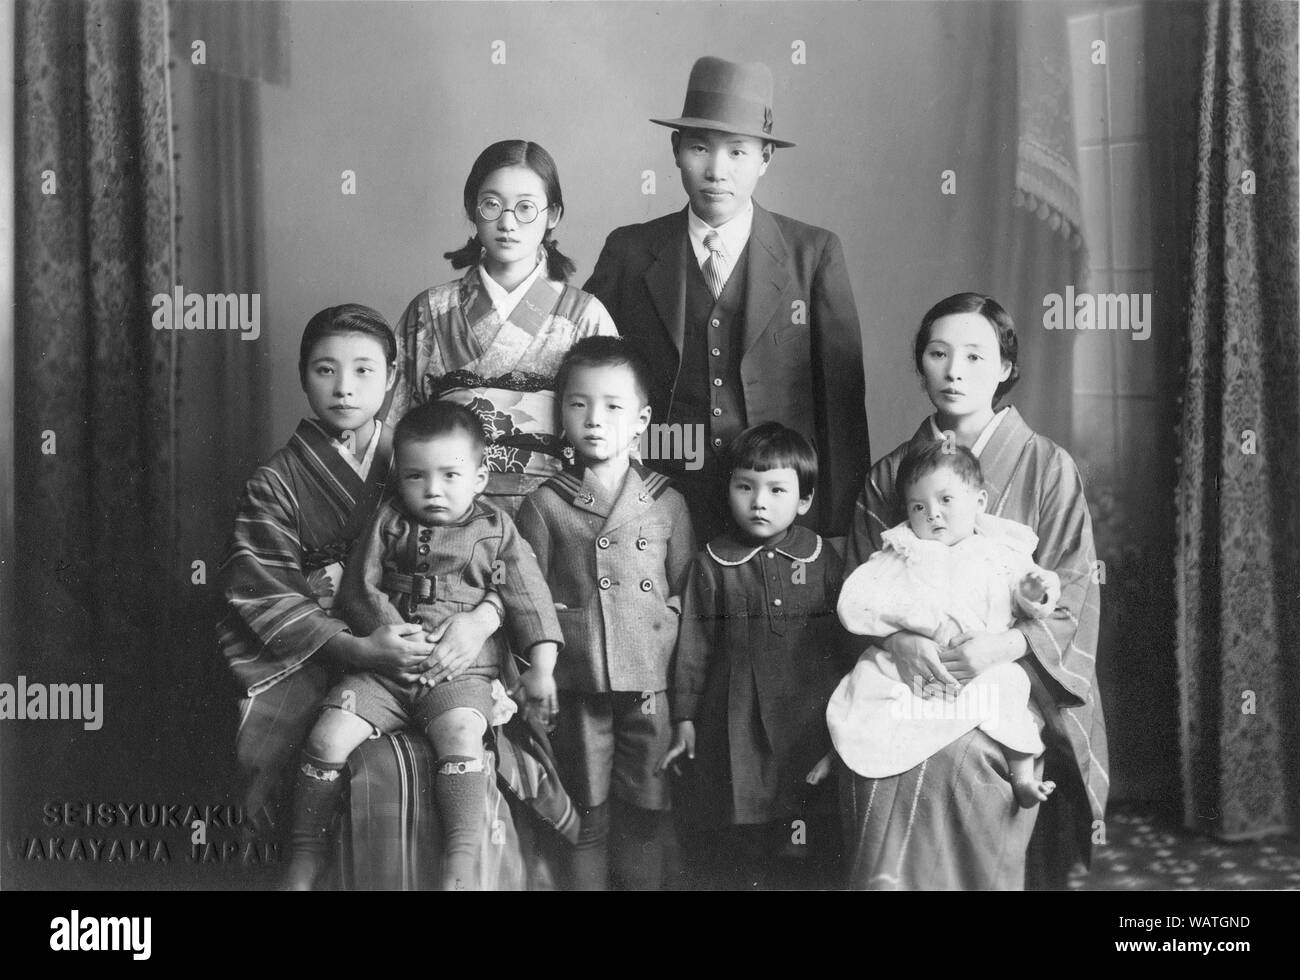 [ 1930 - Japon ] famille japonaise - famille japonaise avec mari dans un style occidental suite et les femmes en kimono. 20e siècle Tirage argentique d'époque. Banque D'Images